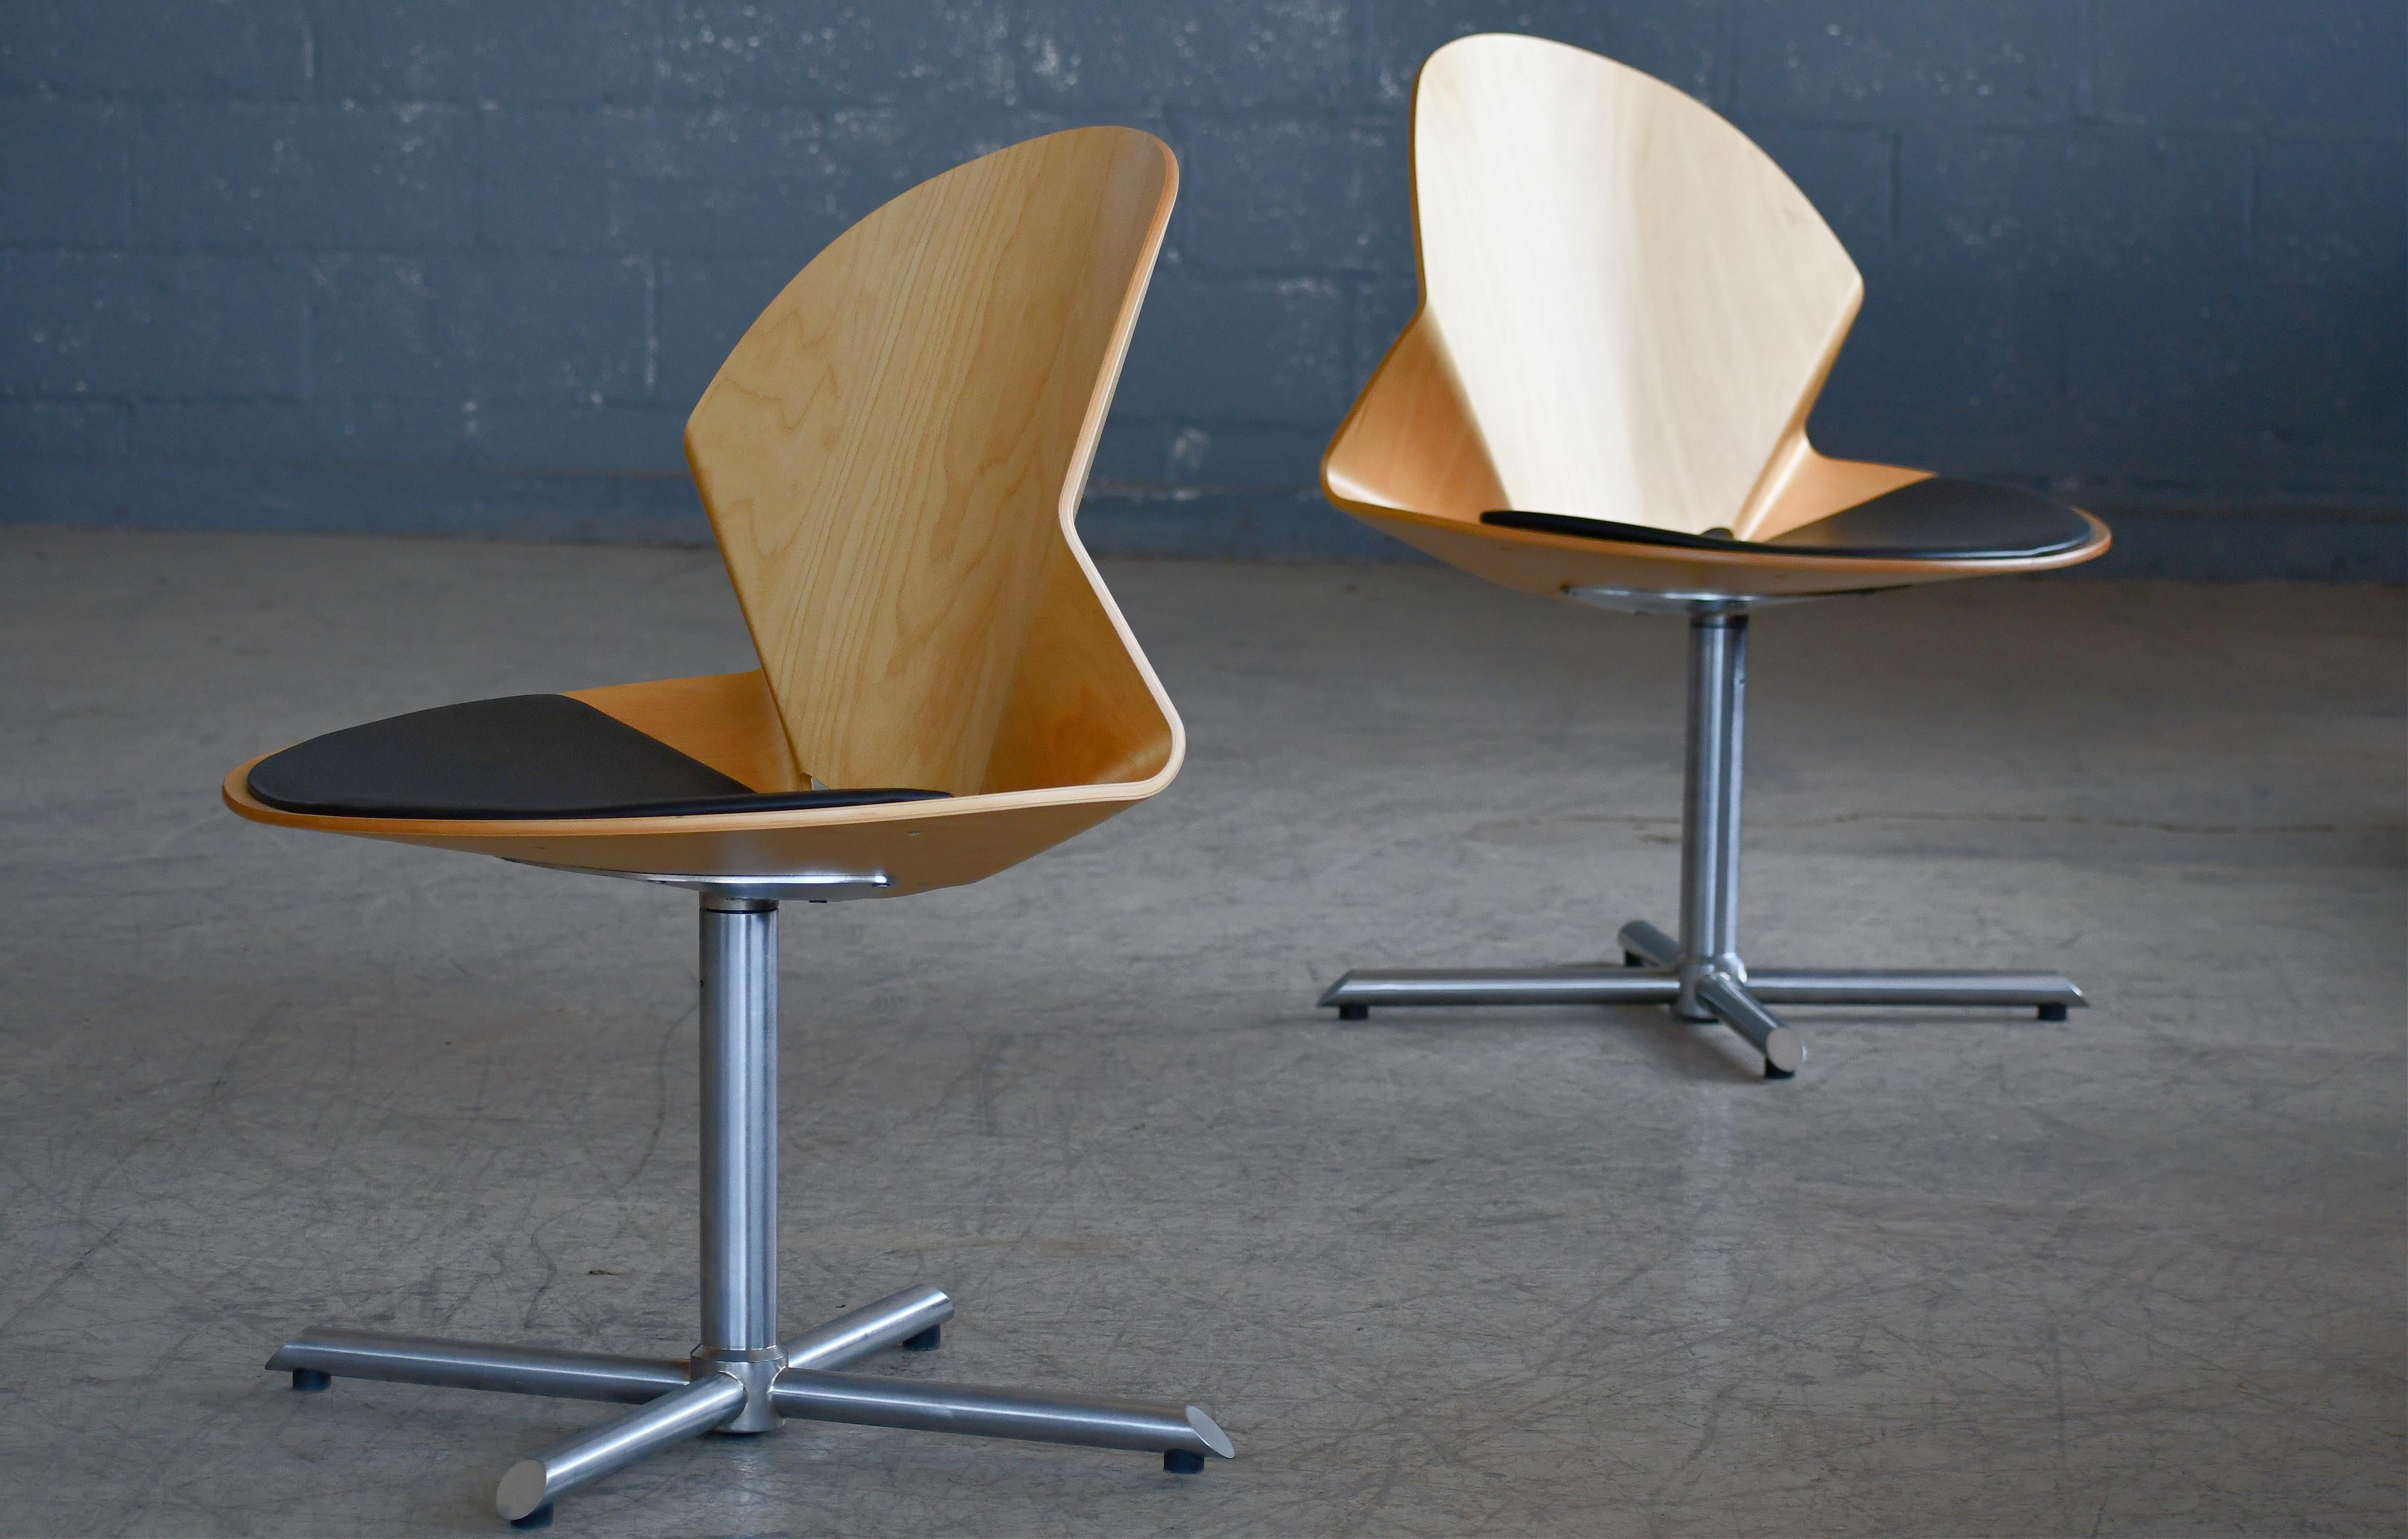 Une paire de chaises longues très cool, modèle Rex, conçues par Christina Strand et fabriquées par le célèbre fabricant de meubles danois Fredericia Mobler. Le modèle de chaise a été conçu en 2002 et fabriqué à peu près à la même époque. Fabriqué en